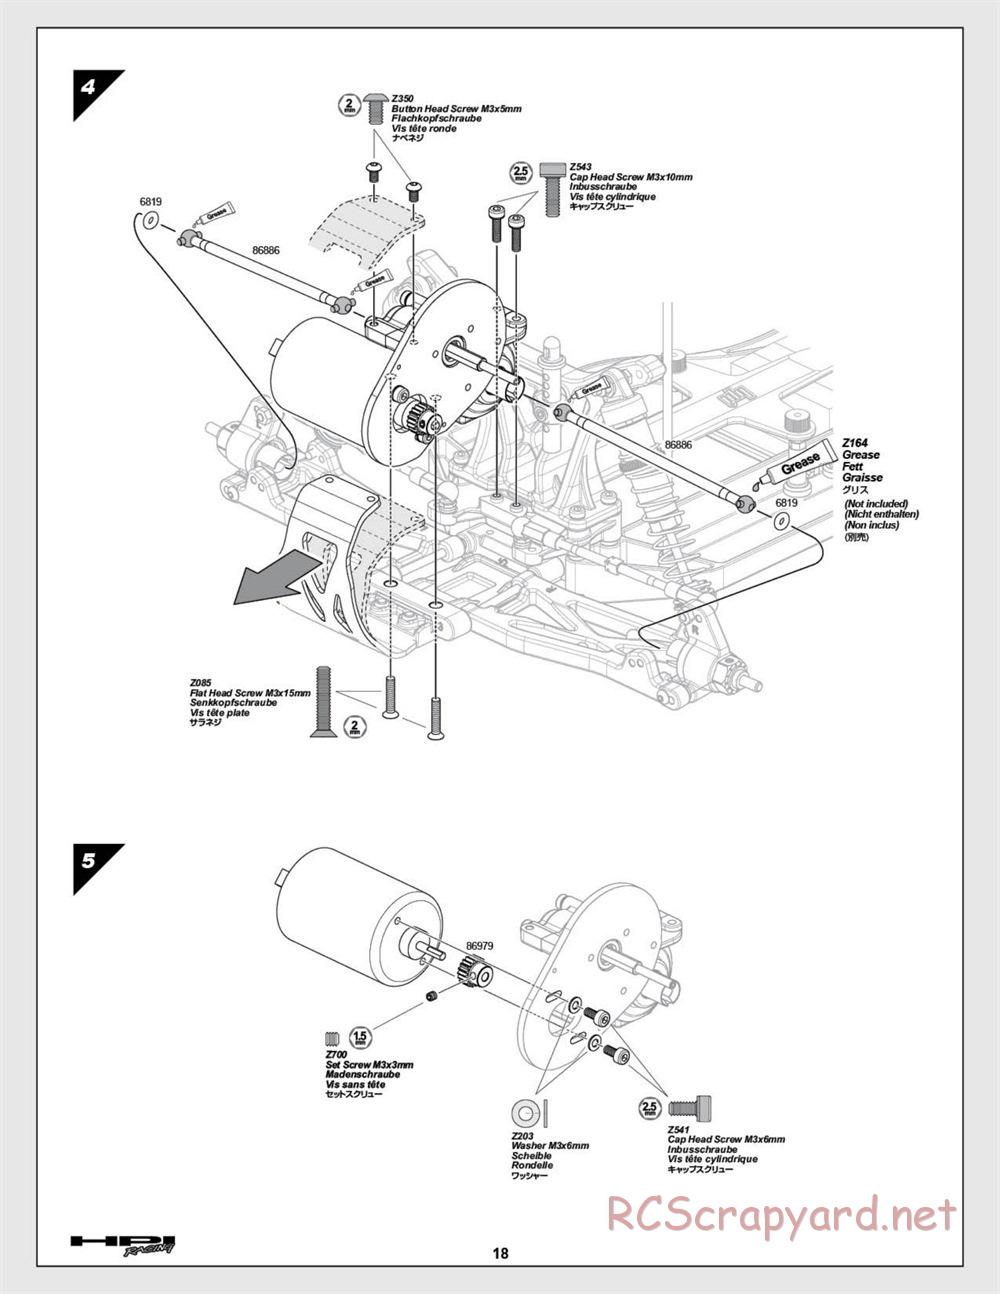 HPI - E-Firestorm 10T - Manual - Page 18